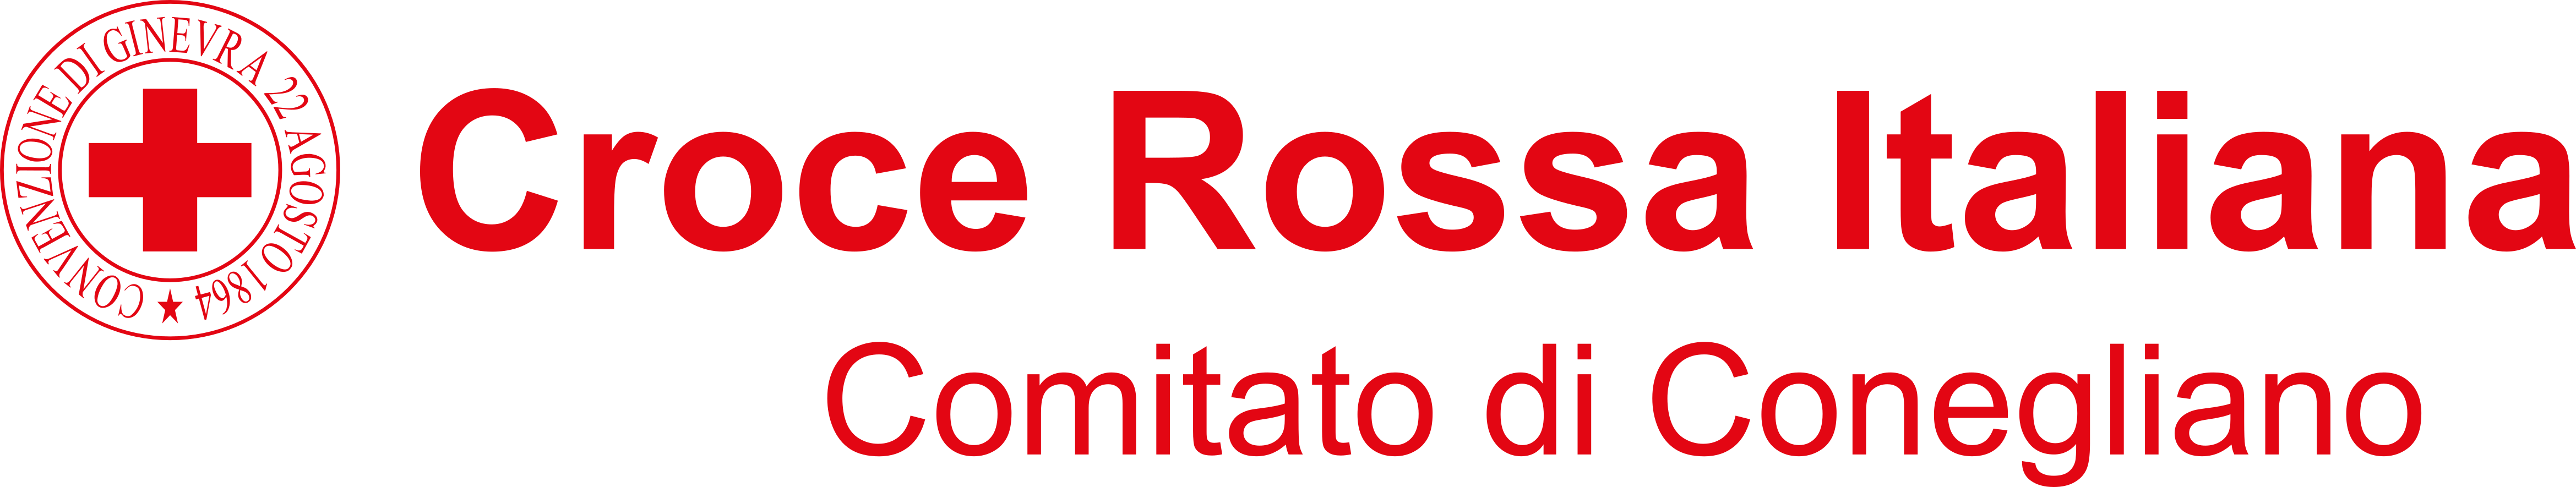 Croce Rossa Italiana - Comitato di Conegliano